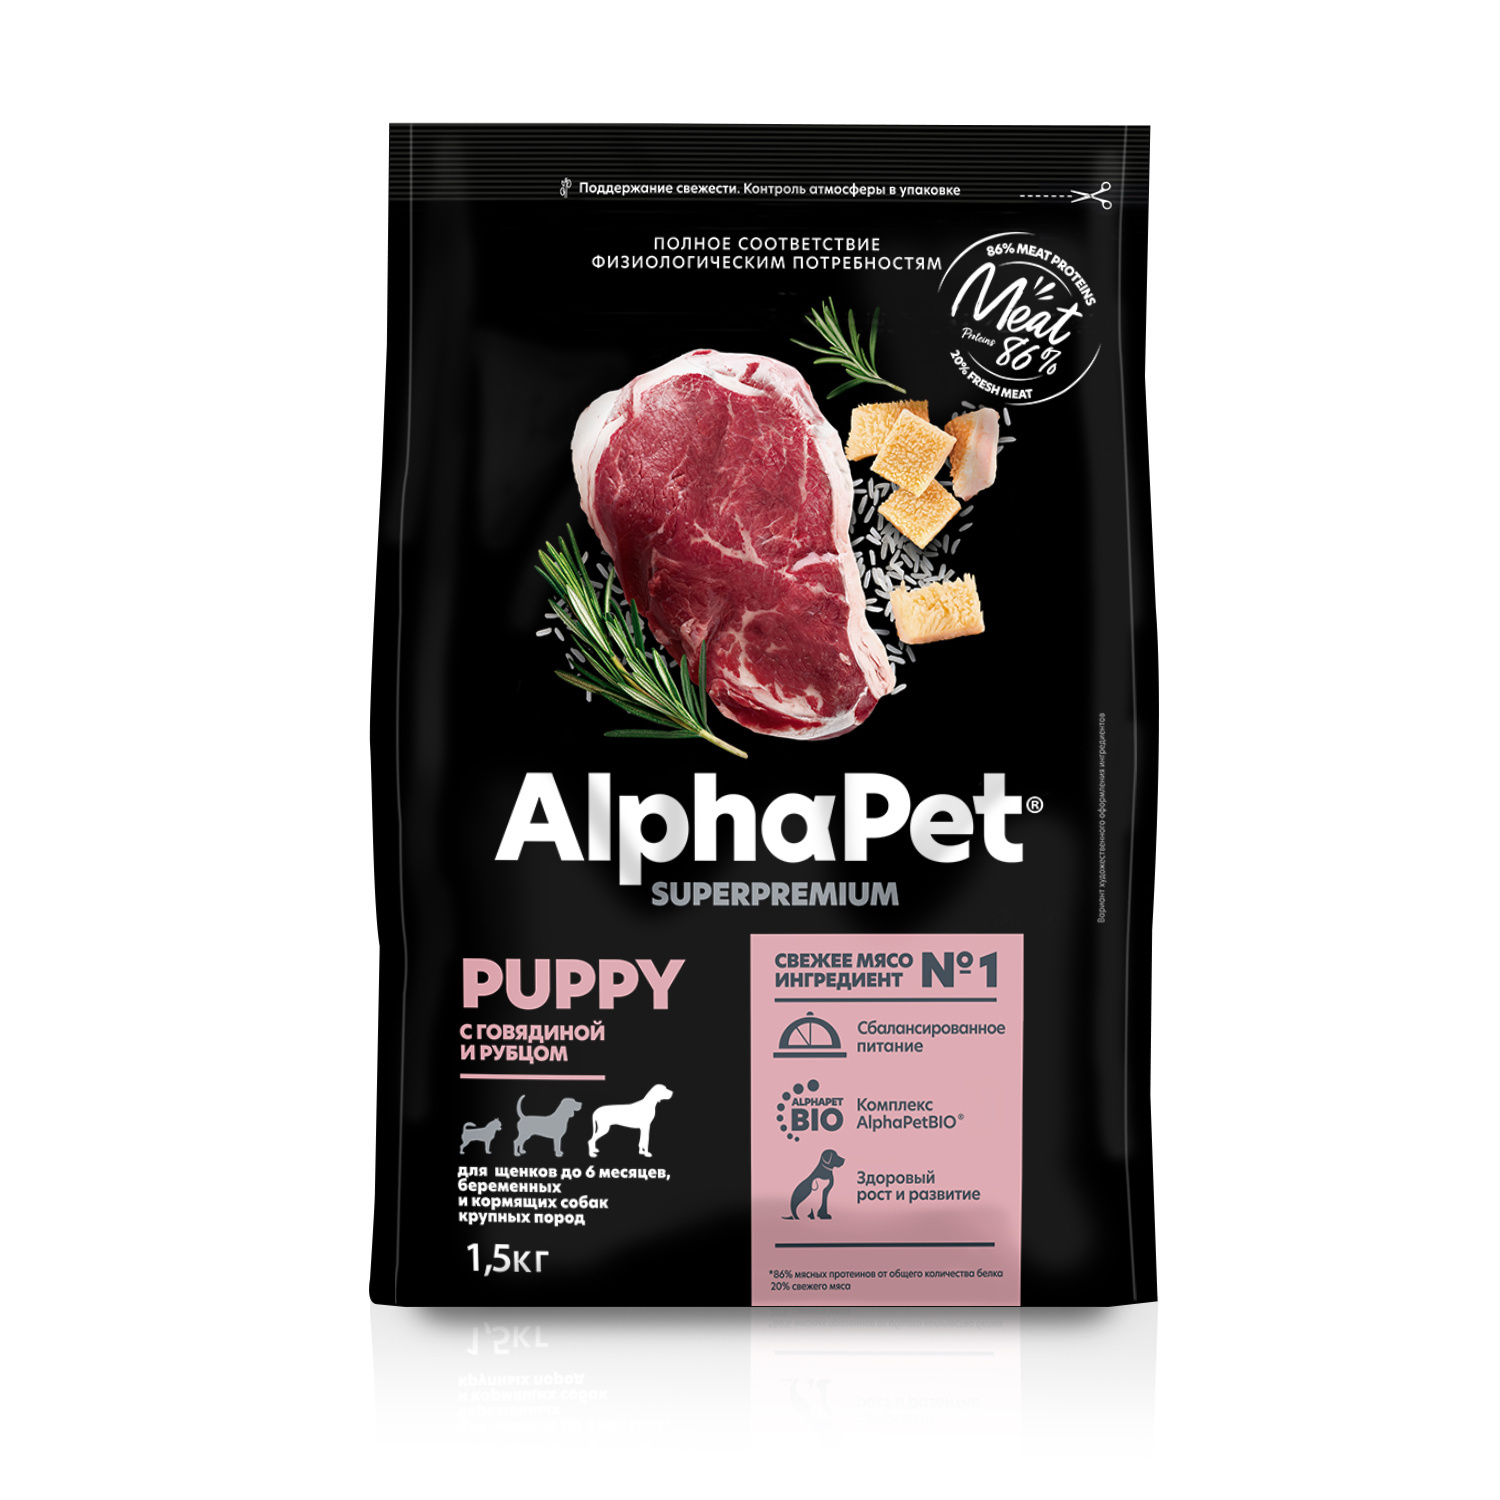 AlphaPet AlphaPet сухой полнорационный корм с говядиной и рубцом для щенков до 6 месяцев, беременных и кормящих собак крупных пород (12 кг)